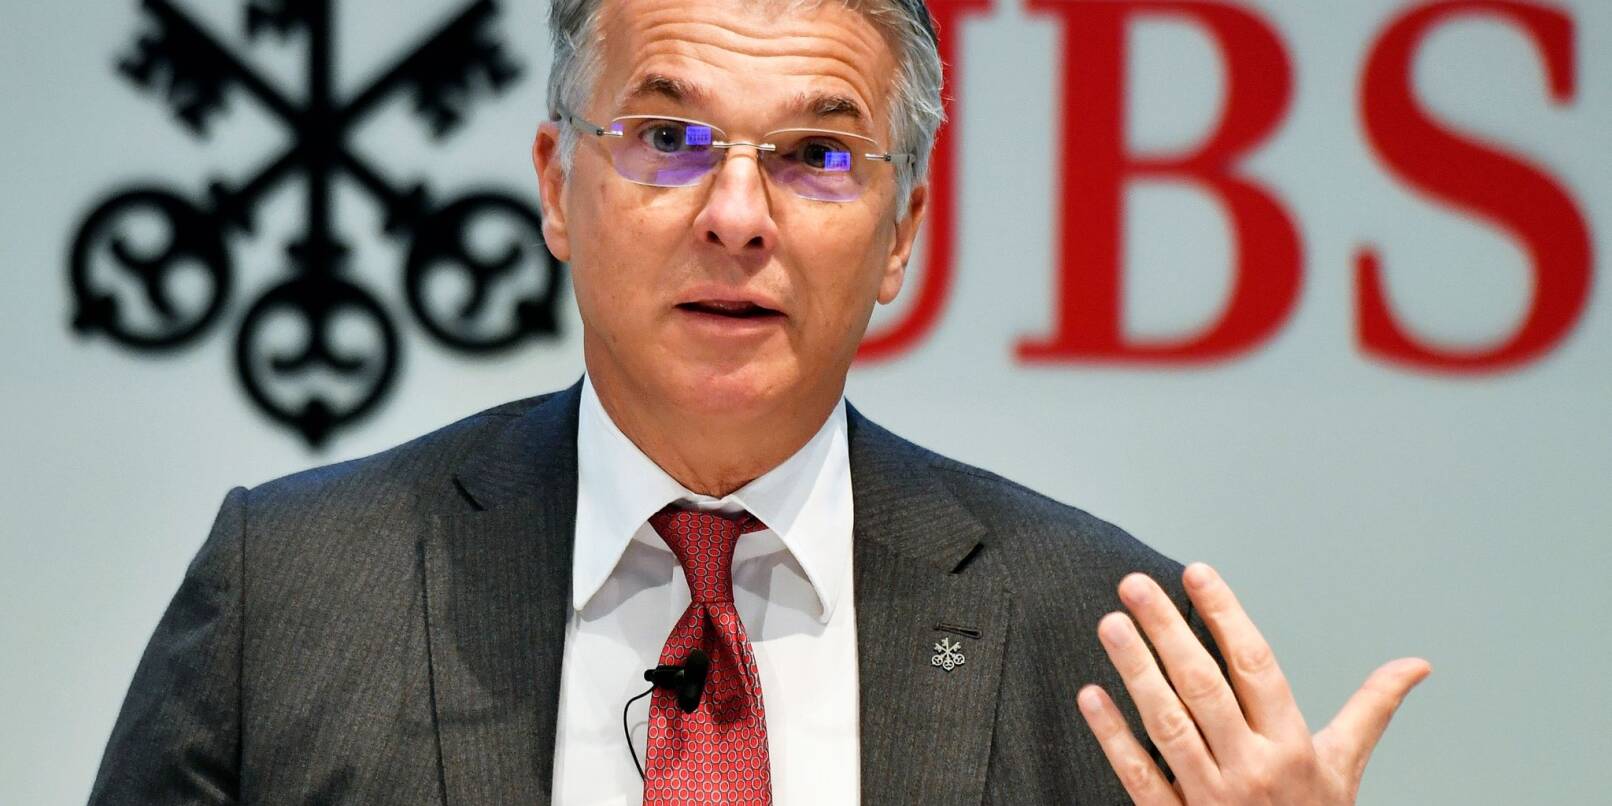 Die größte Schweizer Bank UBS holt Sergio Ermotti an die Konzernspitze zurück.